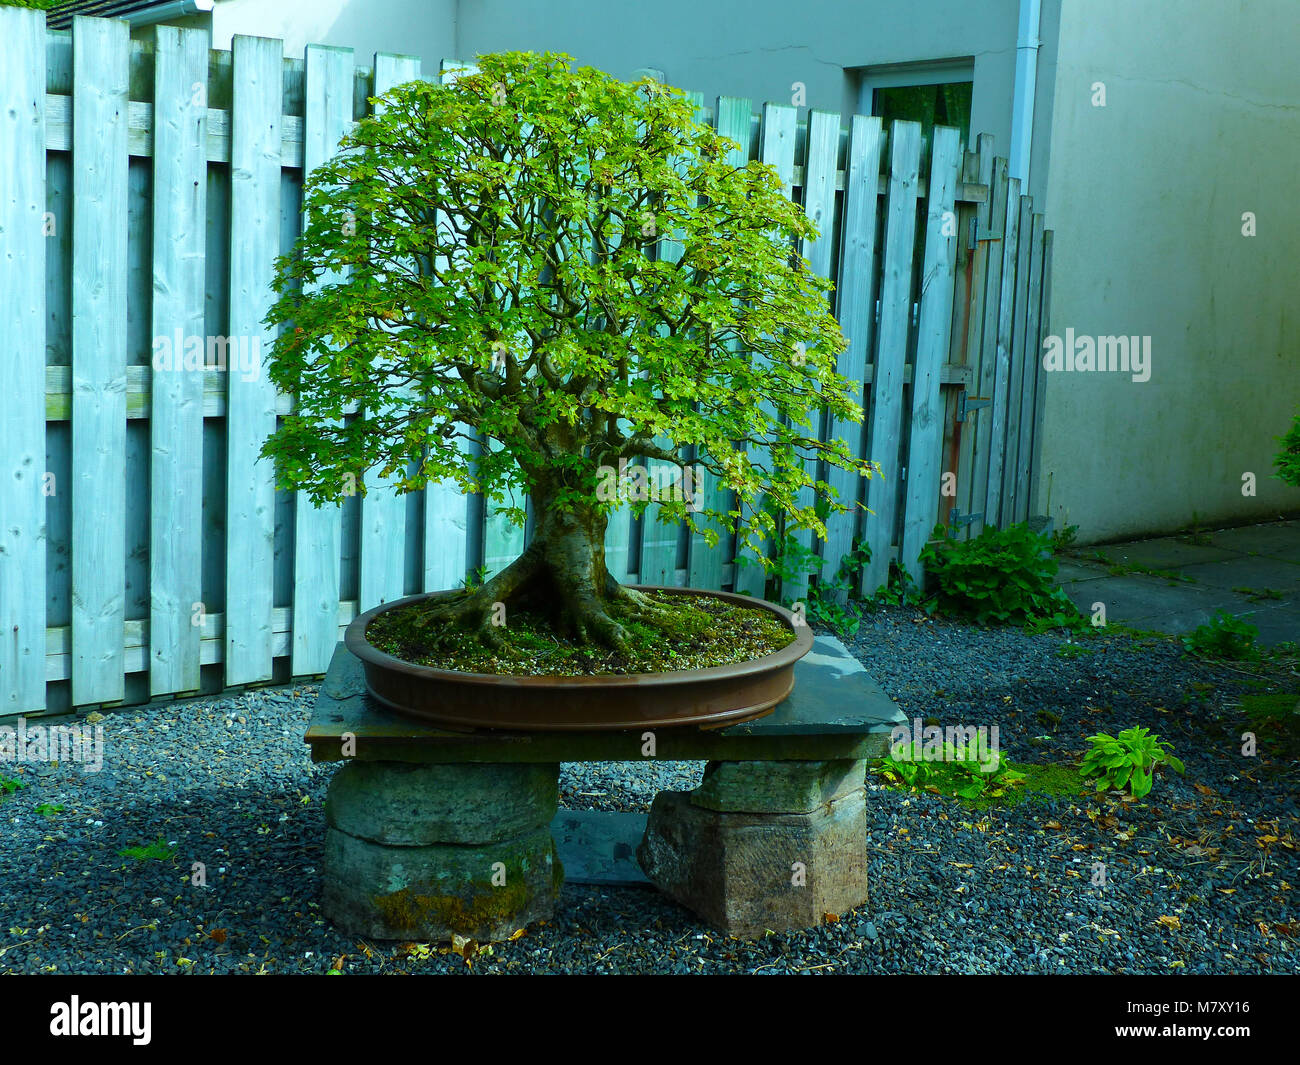 Spécimen exceptionnel de travail verticale informel important bonsaï d'érable à l'écran dans un jardin dans les amateurs de Bangor Northern Ireland Banque D'Images